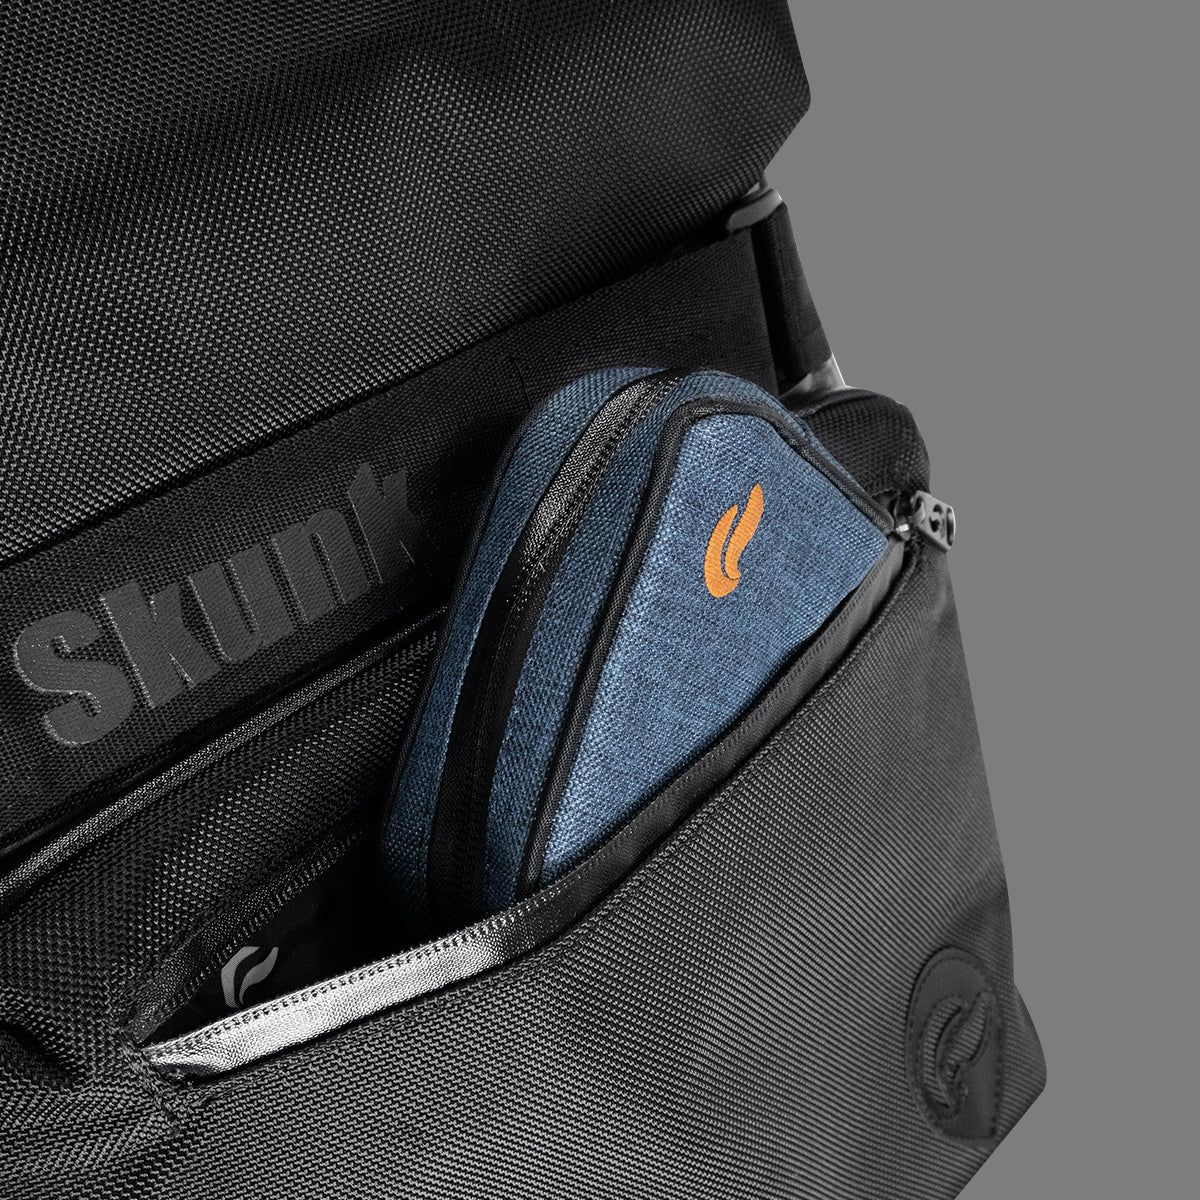 Skunk SoHo Backpack - Black/Black Leather